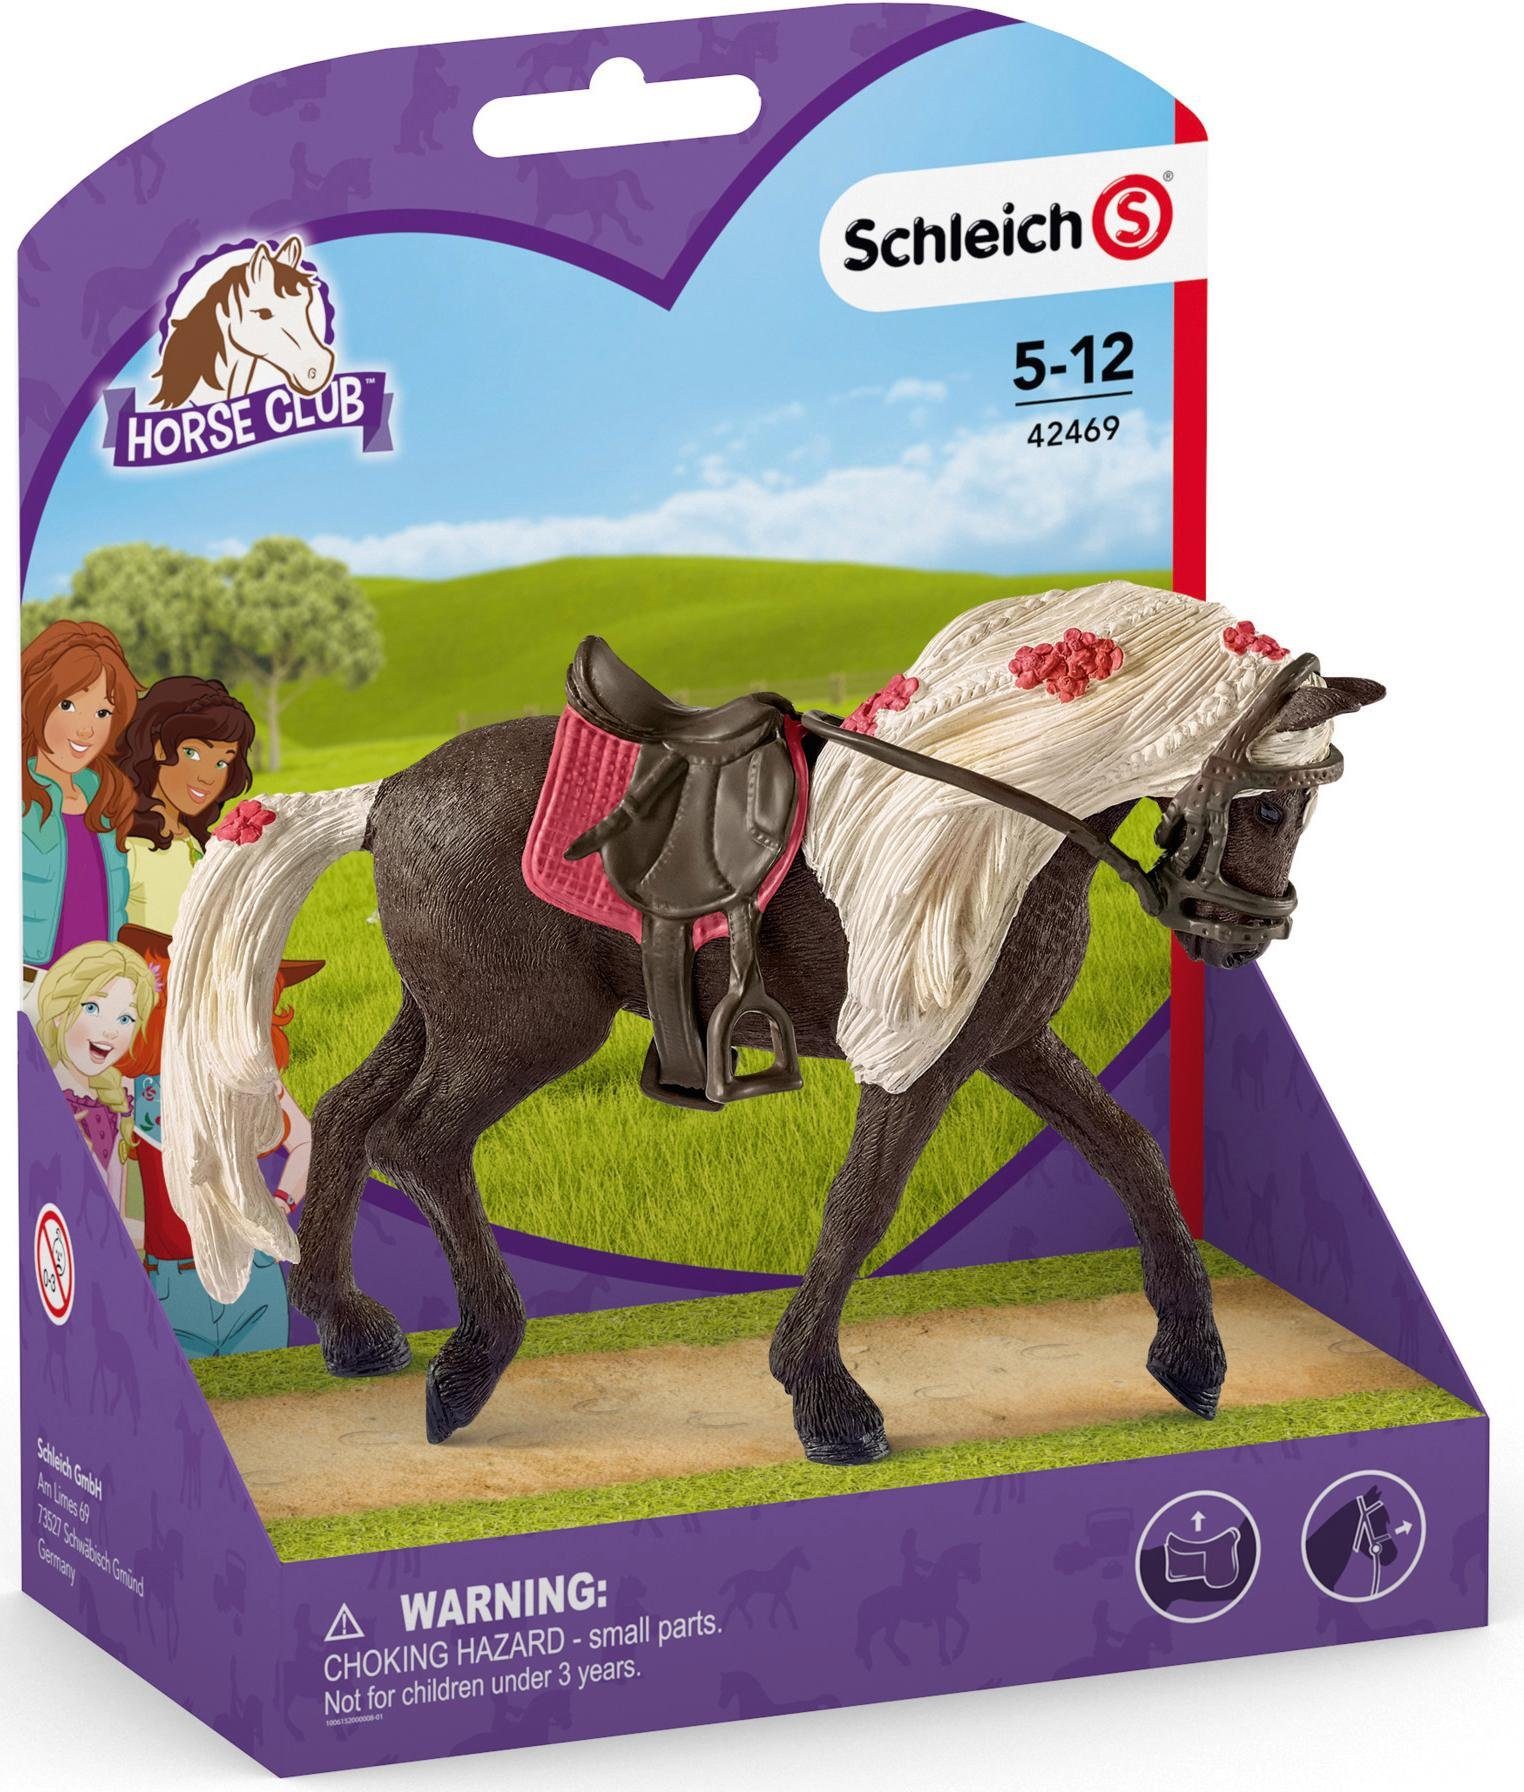 Horse Mountain Spielfigur Rocky CLUB, HORSE Stute Schleich® (42469) Pferdeshow